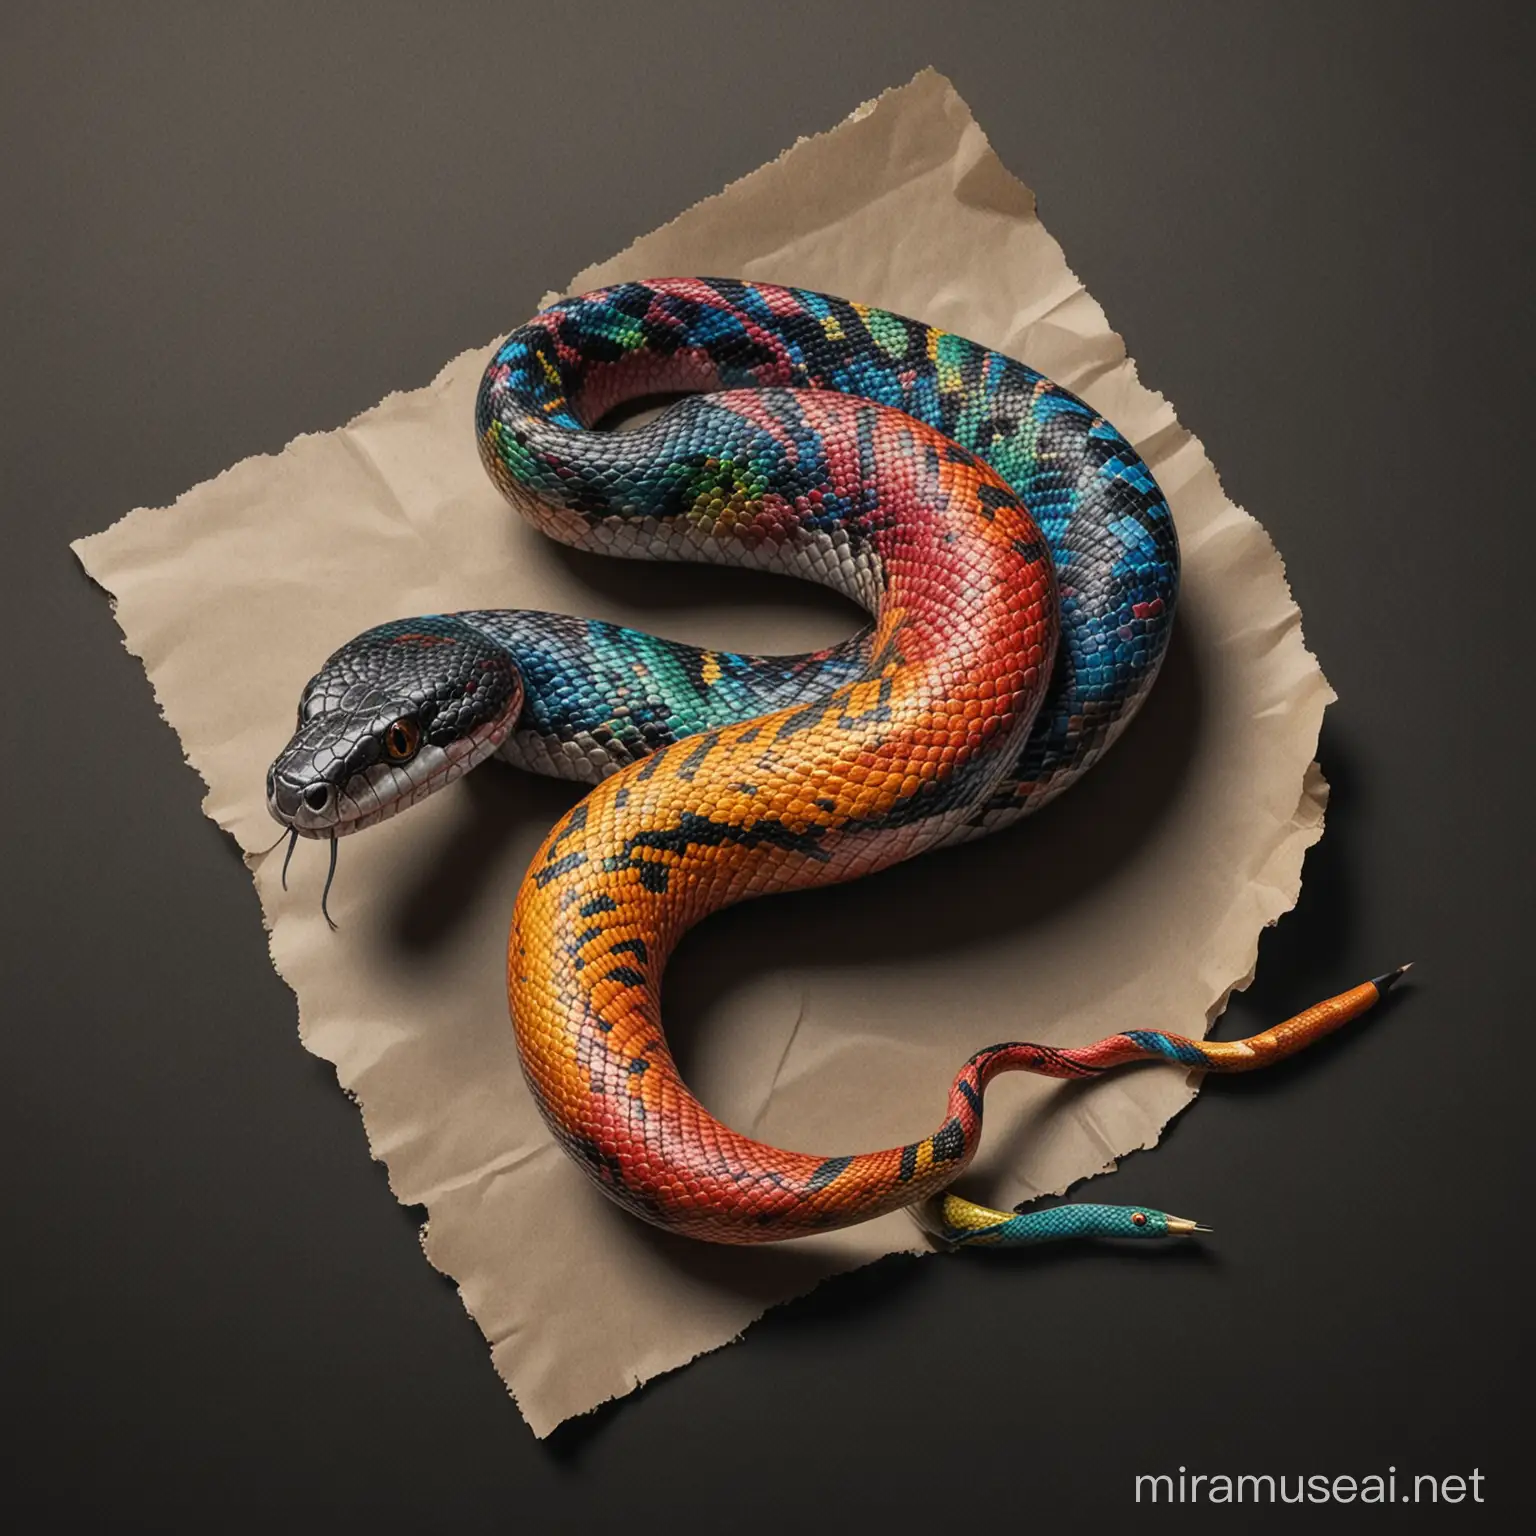 immagine di un serpente variopinto con atteggiamento aggressivo e la coda che termina a forma di matita colorata e striscia su un pezzo di carta accartocciata. Realistico e con fondo nero